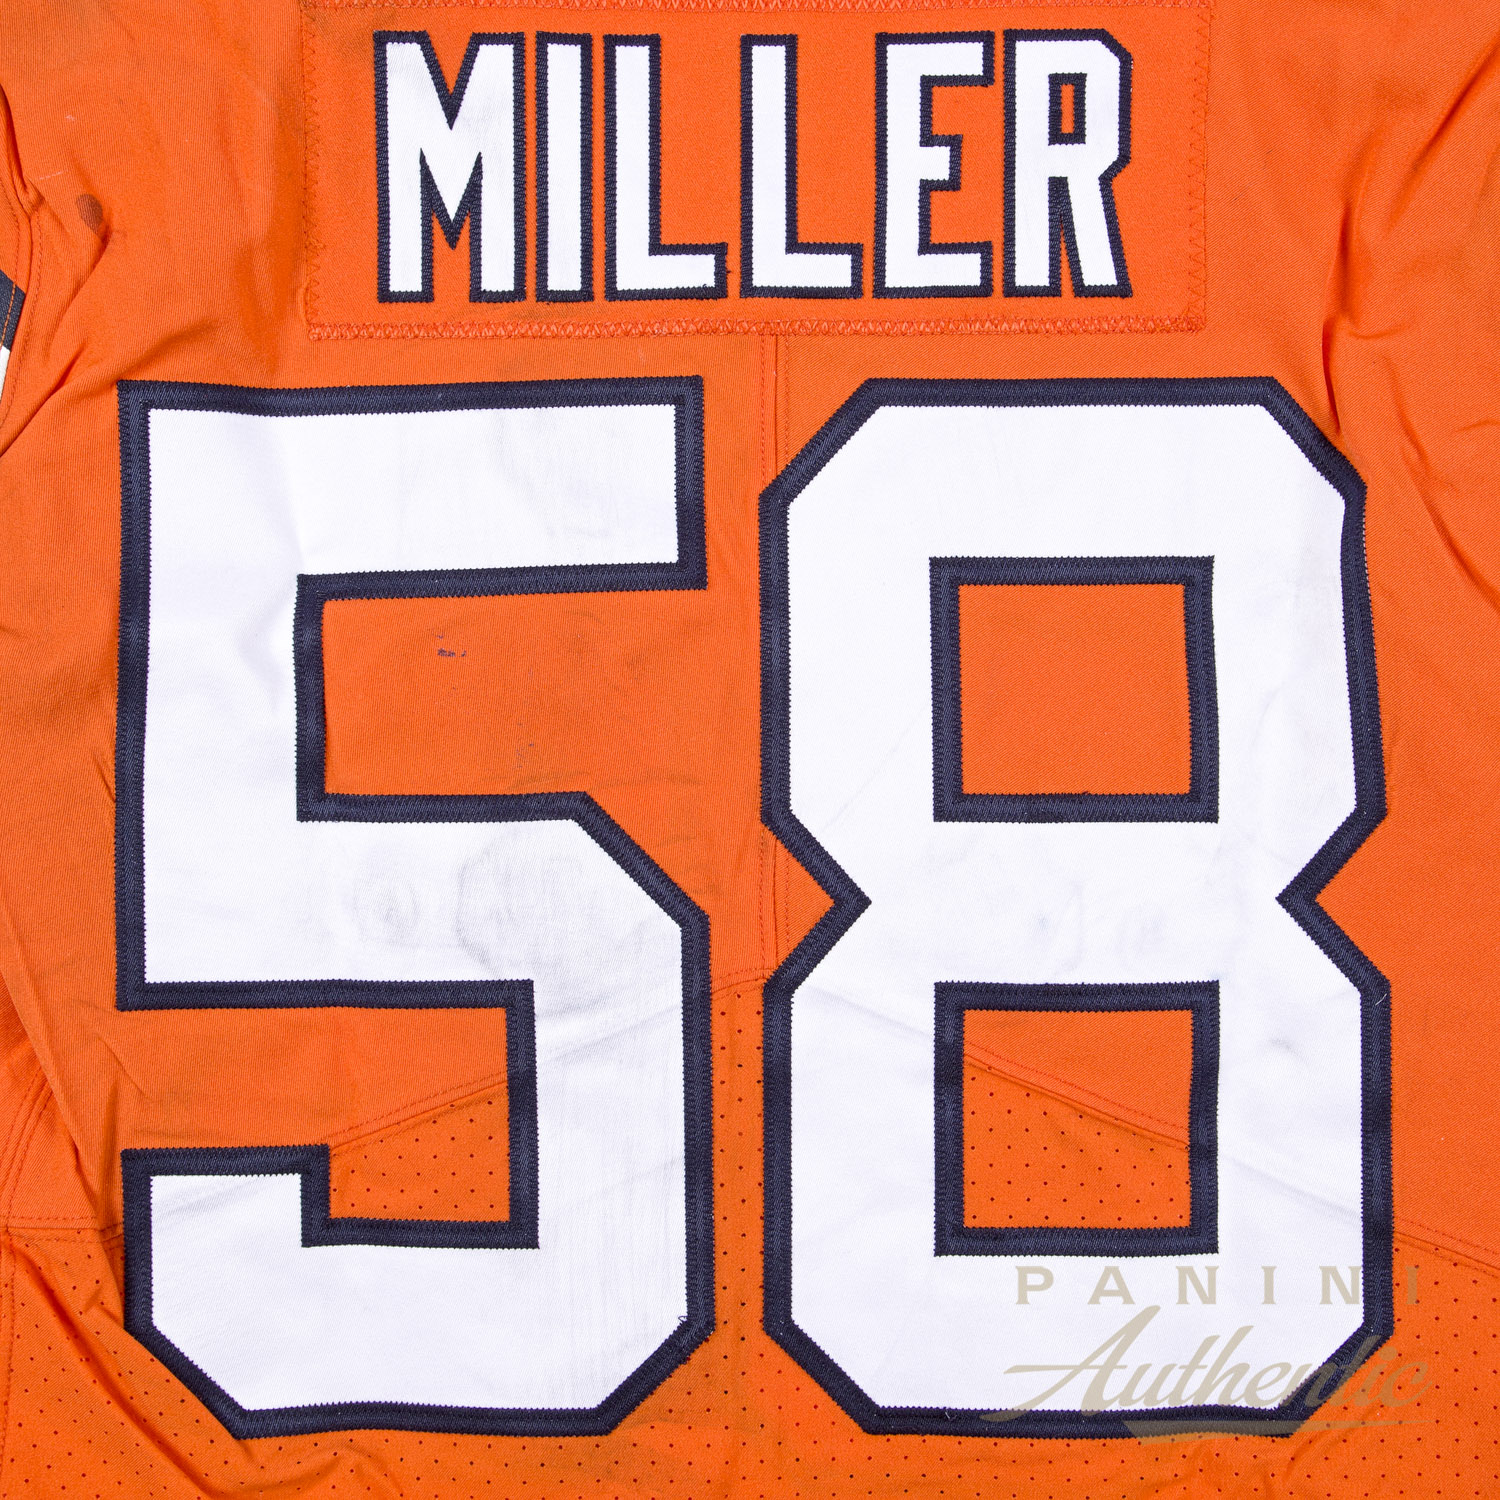 von miller signed jersey